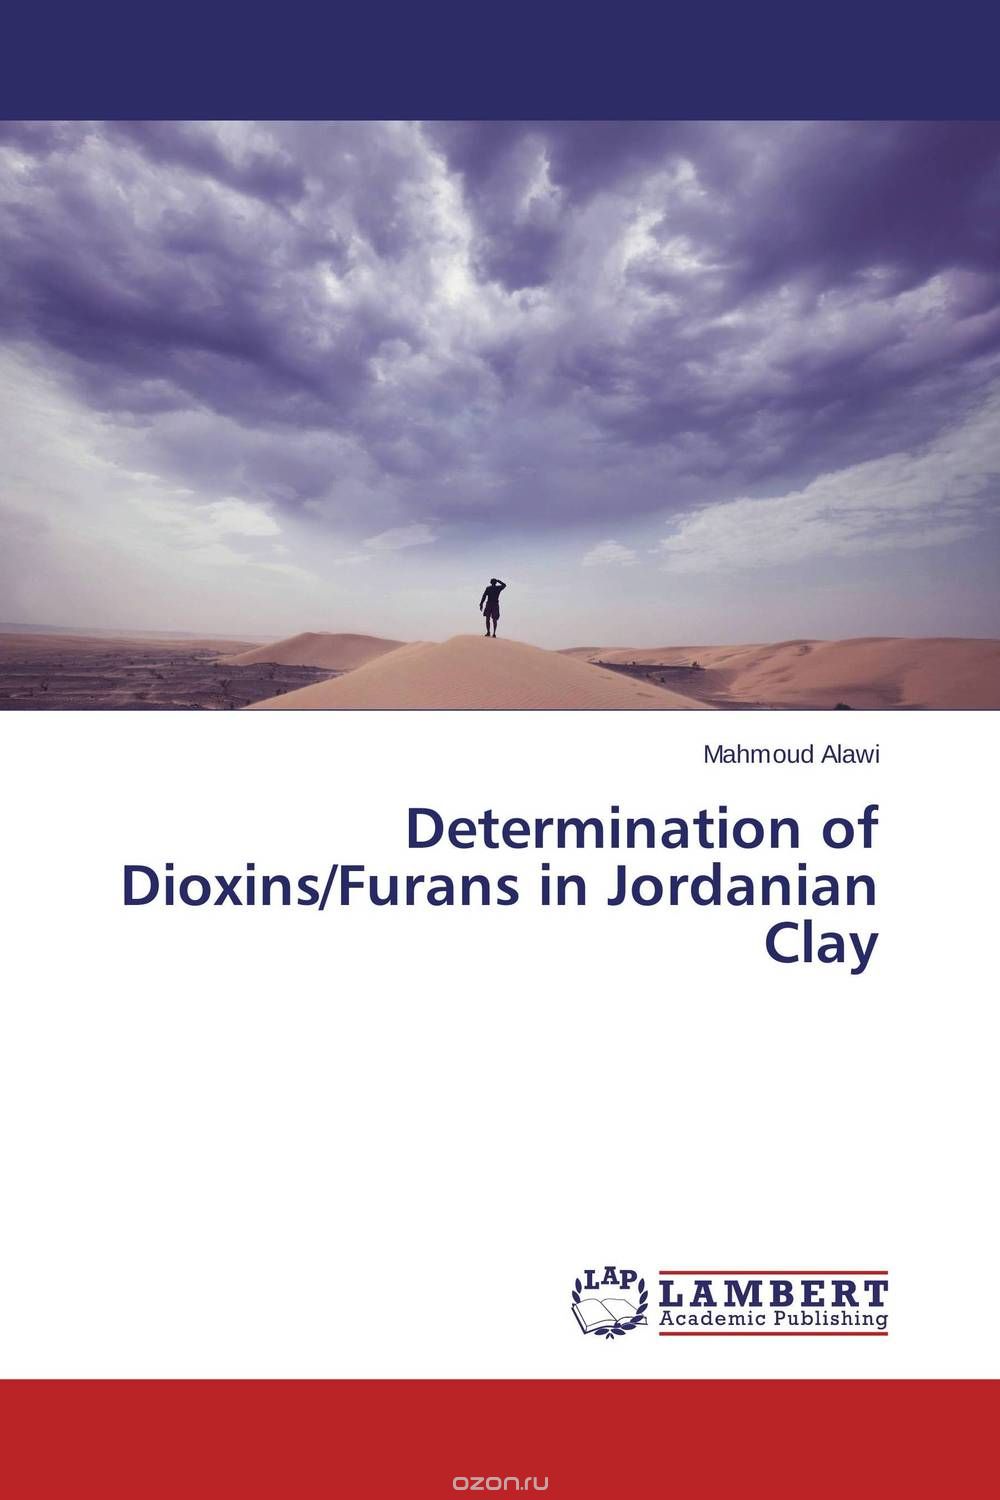 Скачать книгу "Determination of Dioxins/Furans in Jordanian Clay"